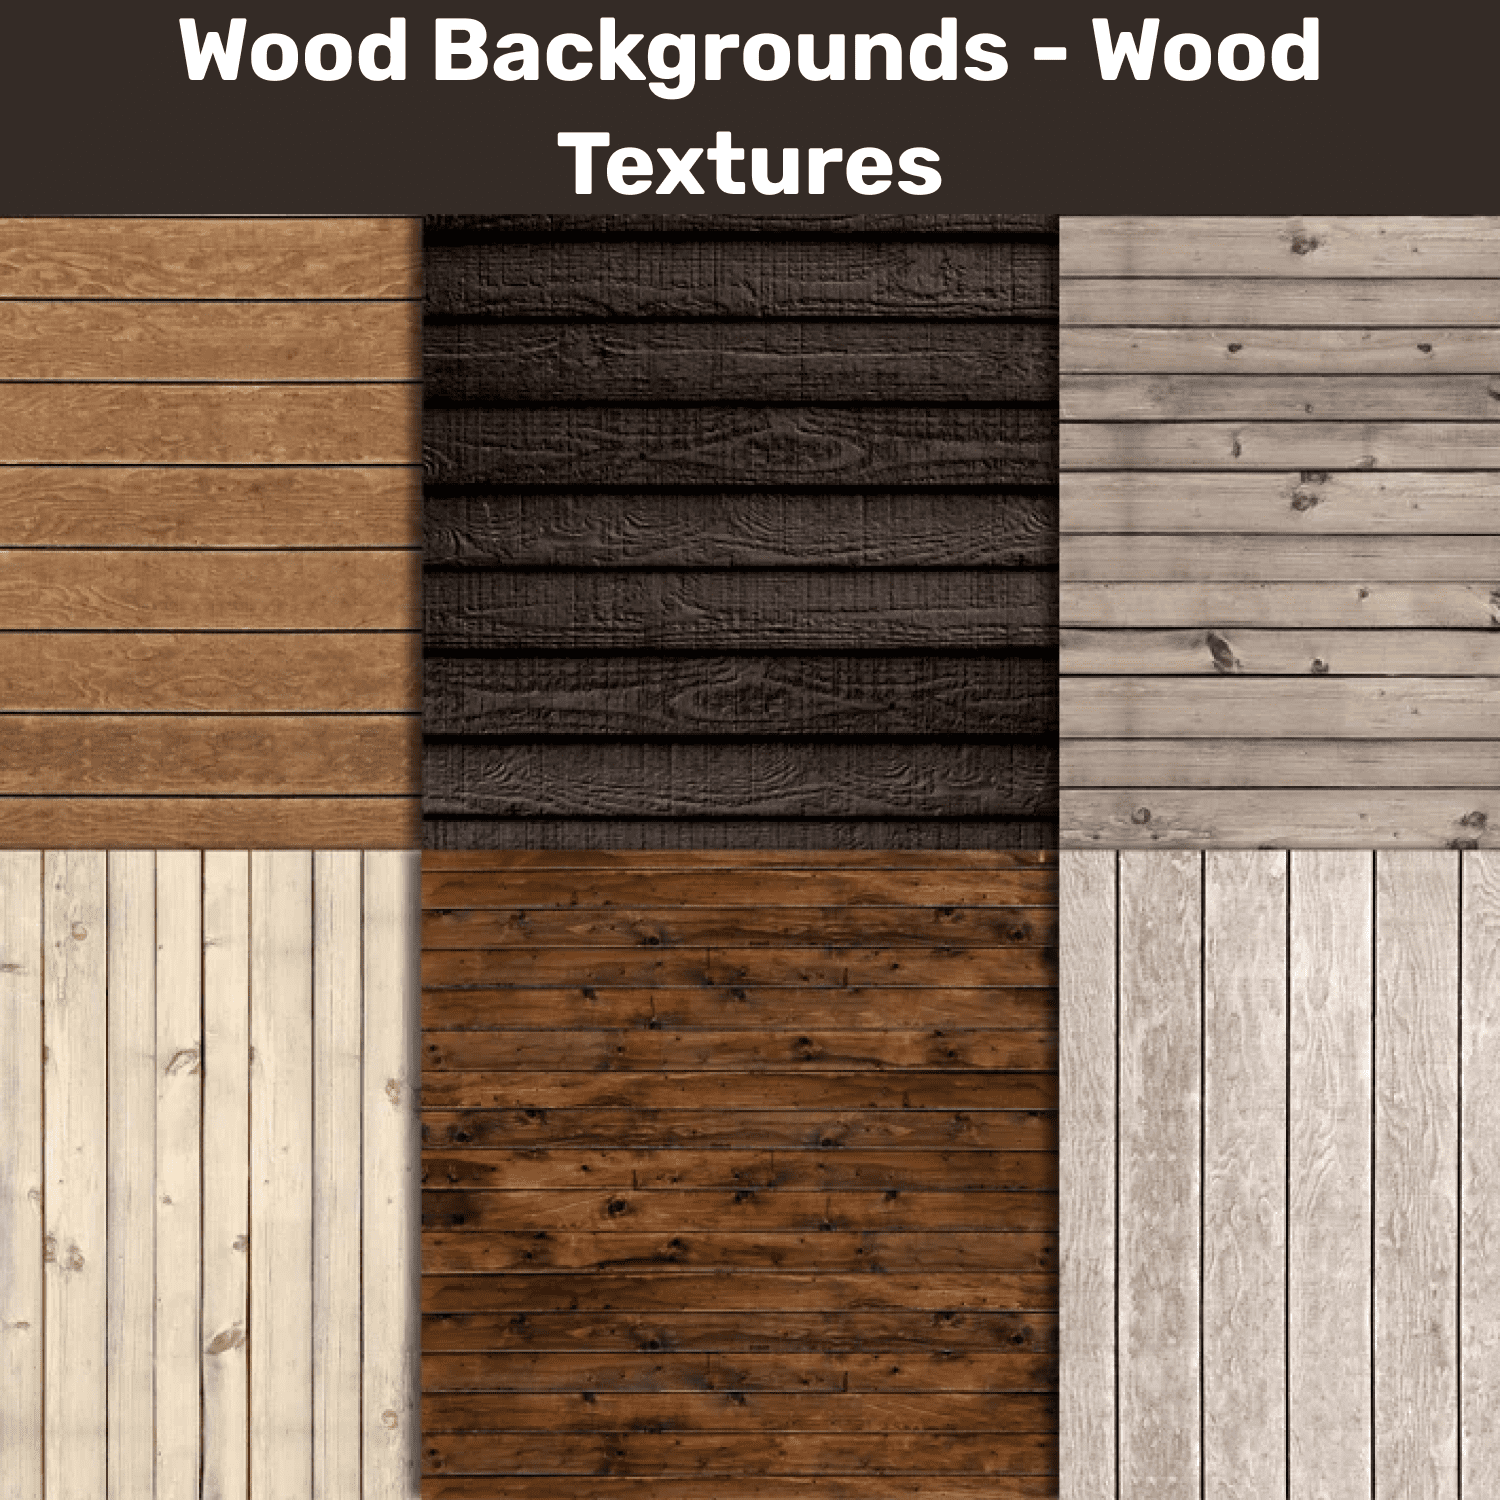 Wood backgrounds với độ chân thực và sự đa dạng về màu sắc luôn làm cho bất cứ hình ảnh nào trở nên sống động hơn. Hãy khám phá rừng cây với những tone màu đa dạng của wood backgrounds trong hình ảnh này!